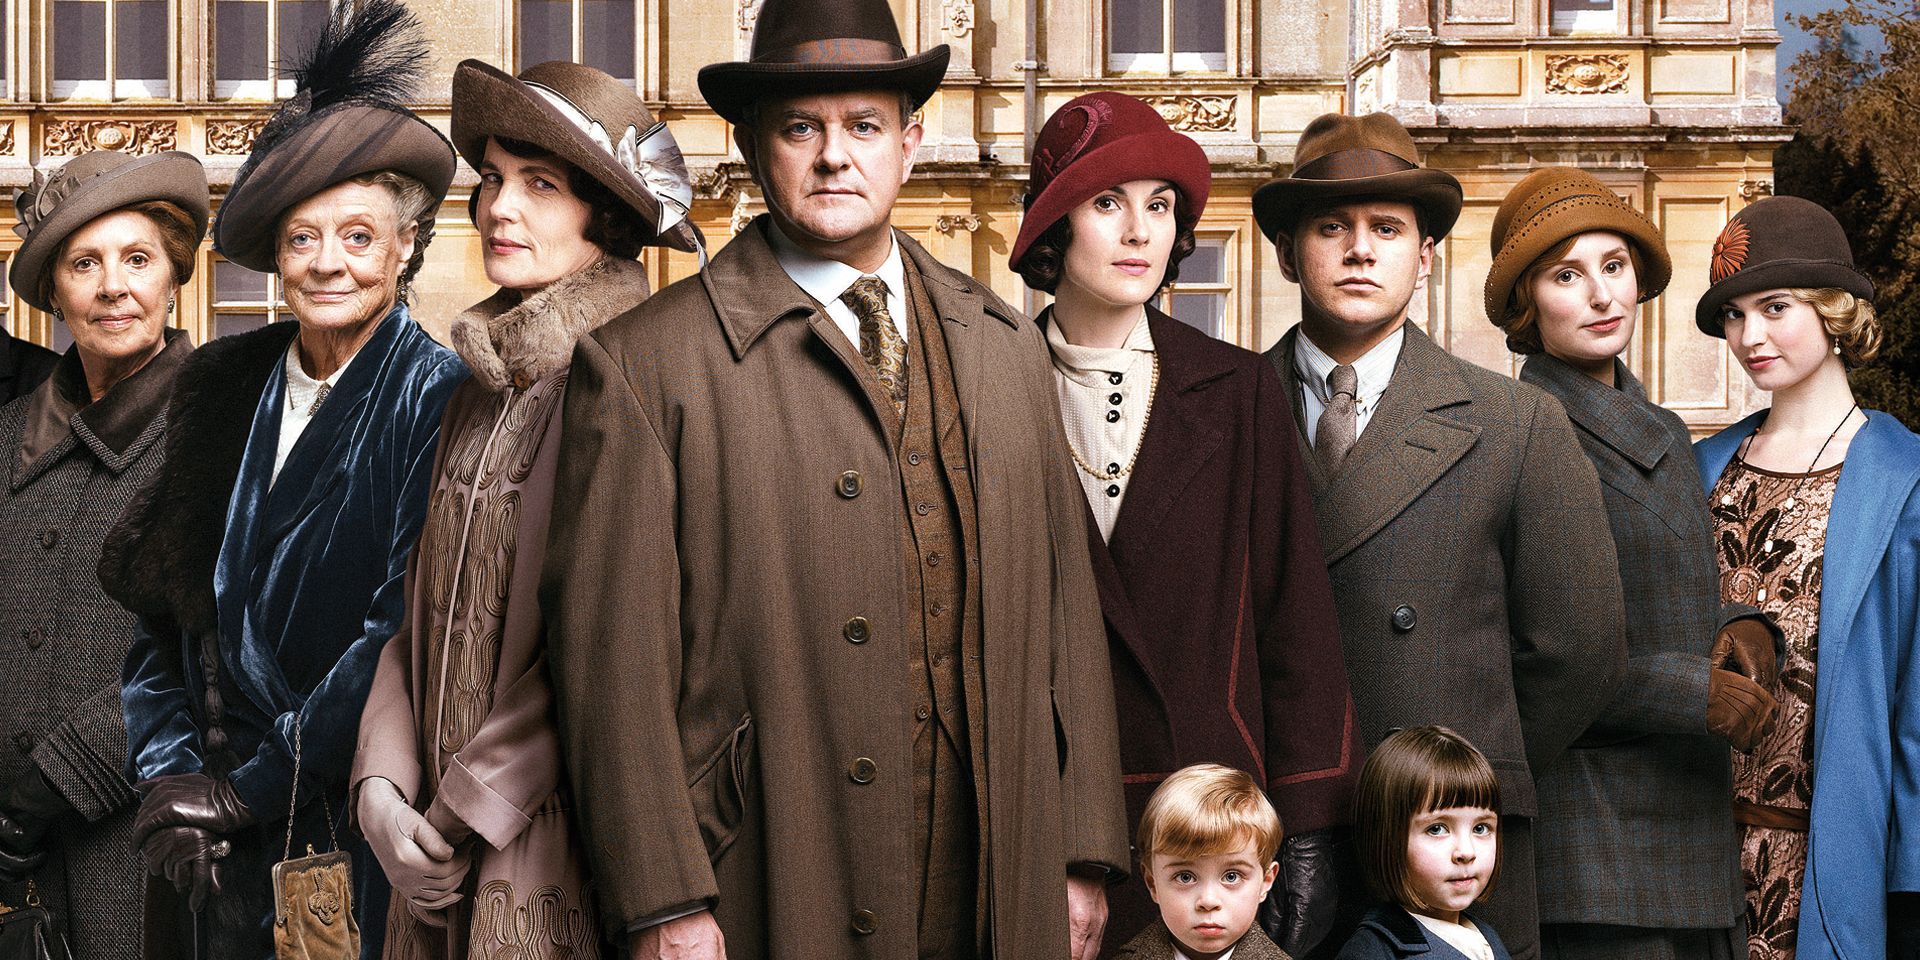 Avance de la película Downton Abbey: La casa ocupa un lugar central